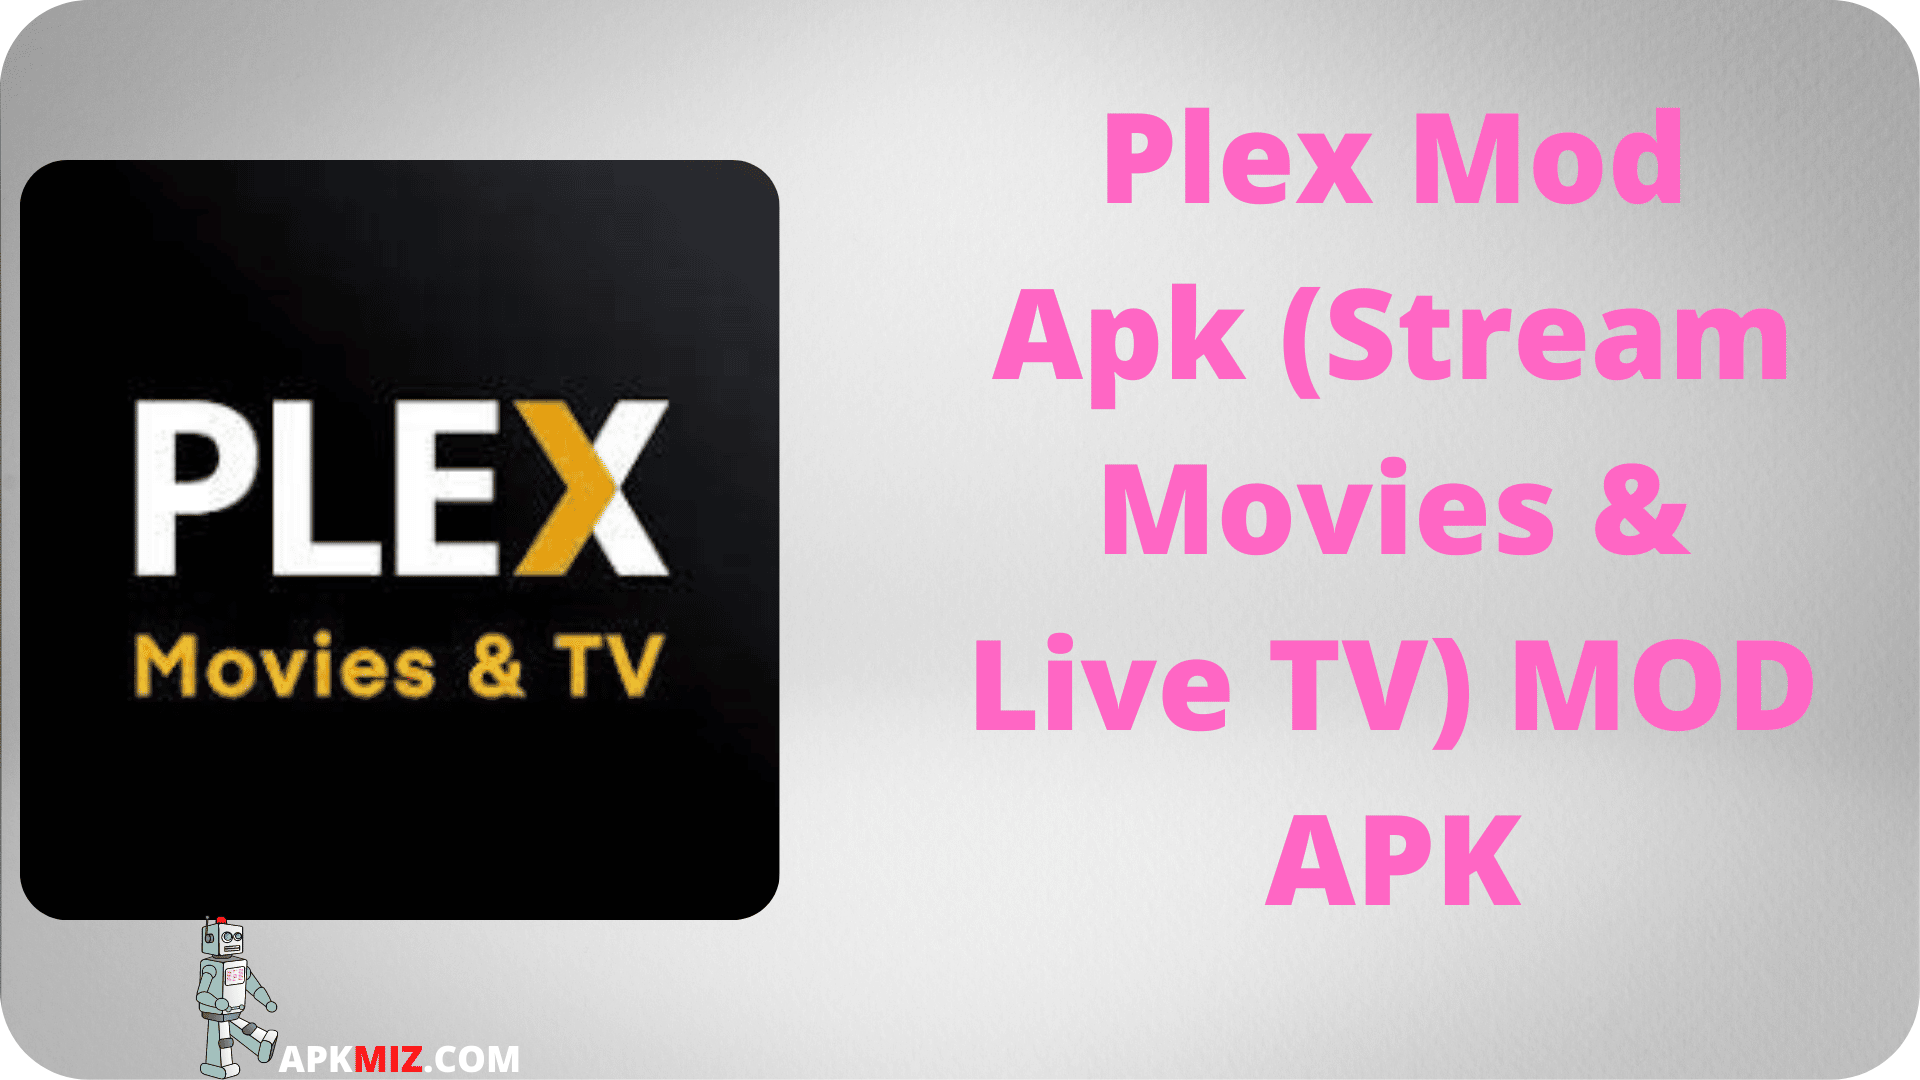 Plex Mod Apk (Stream Movies & Live TV)